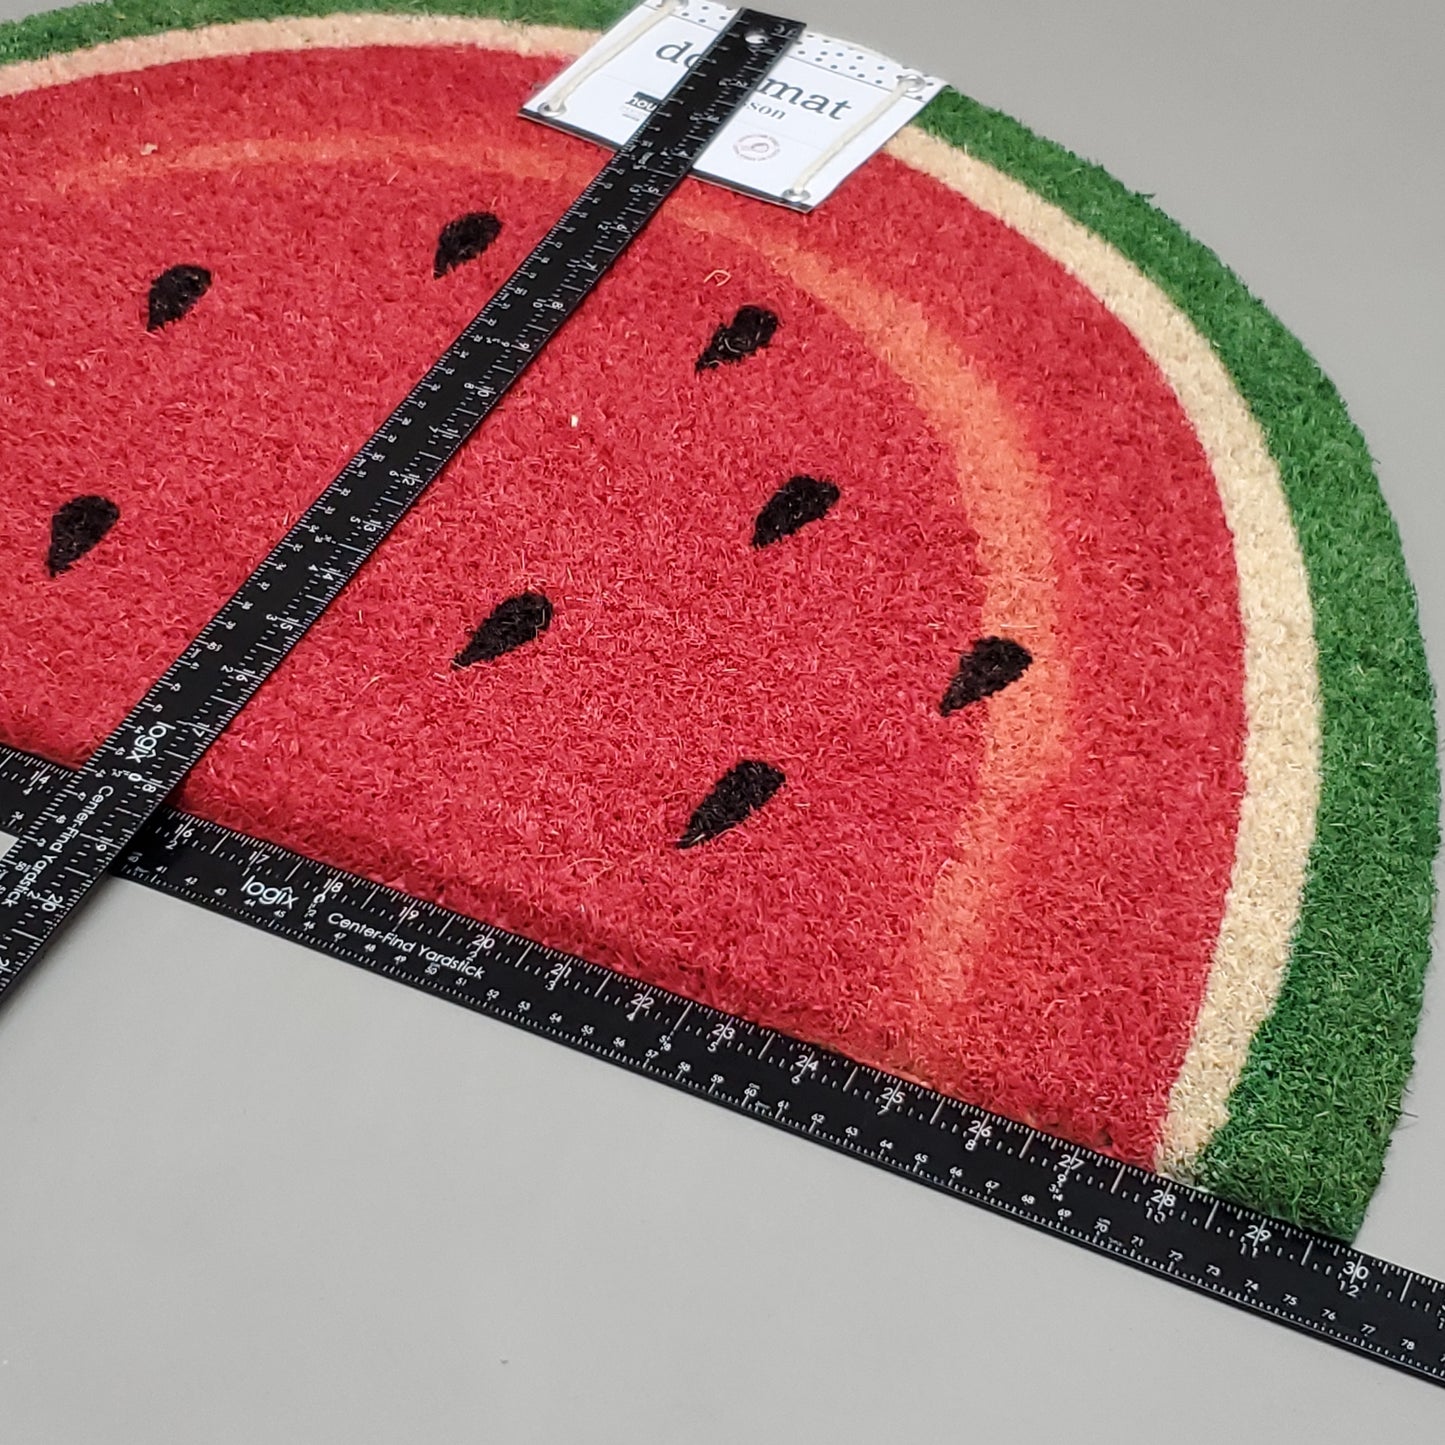 NOW DESIGNS Doormat Paillasson Watermelon Doormat 30" x 17" Red 3035008 (New)